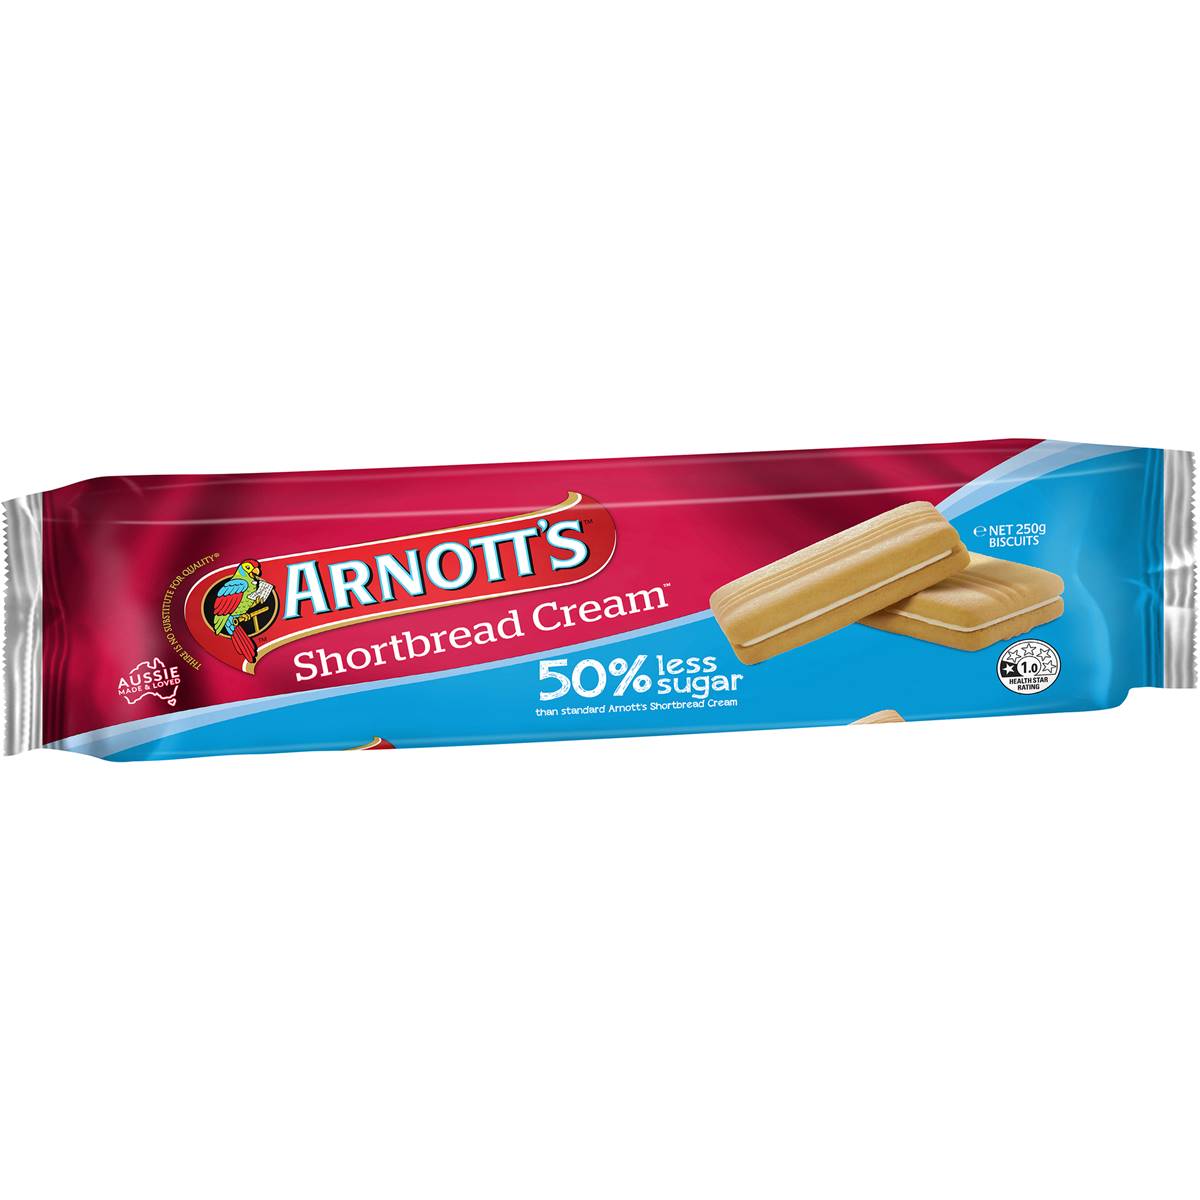 Calories In Arnotts Shortbread Cream Biscuits Tiramisu Calcount 7186